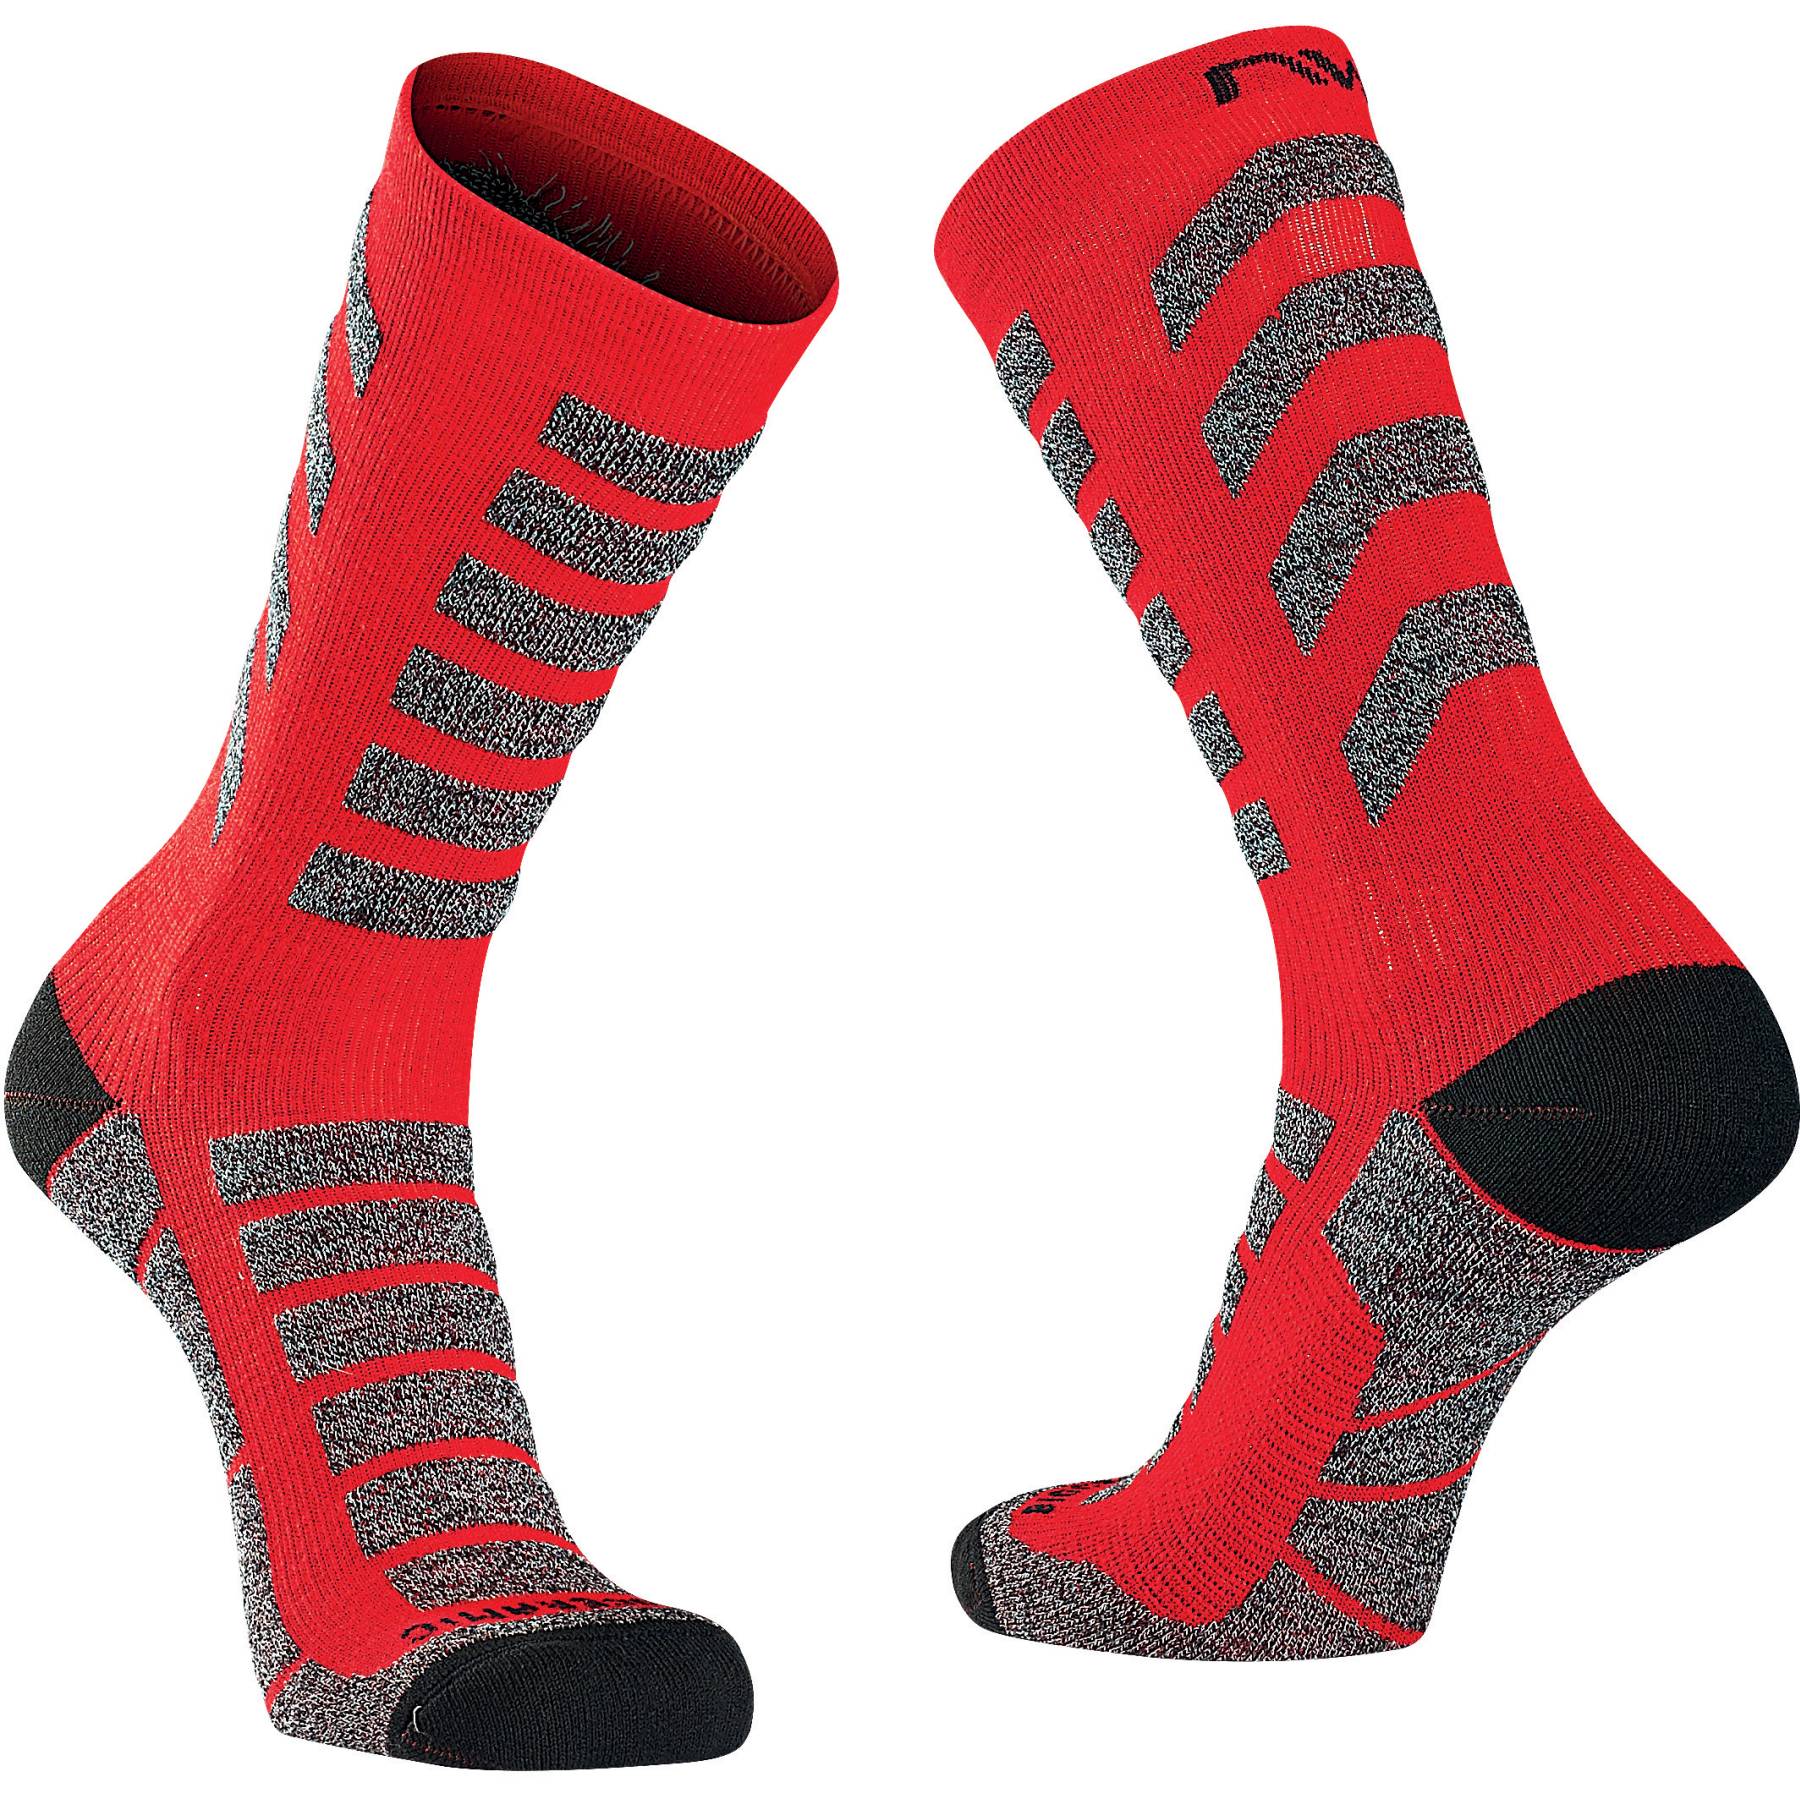 Image of Northwave Husky Ceramic High Socks - red/black 32